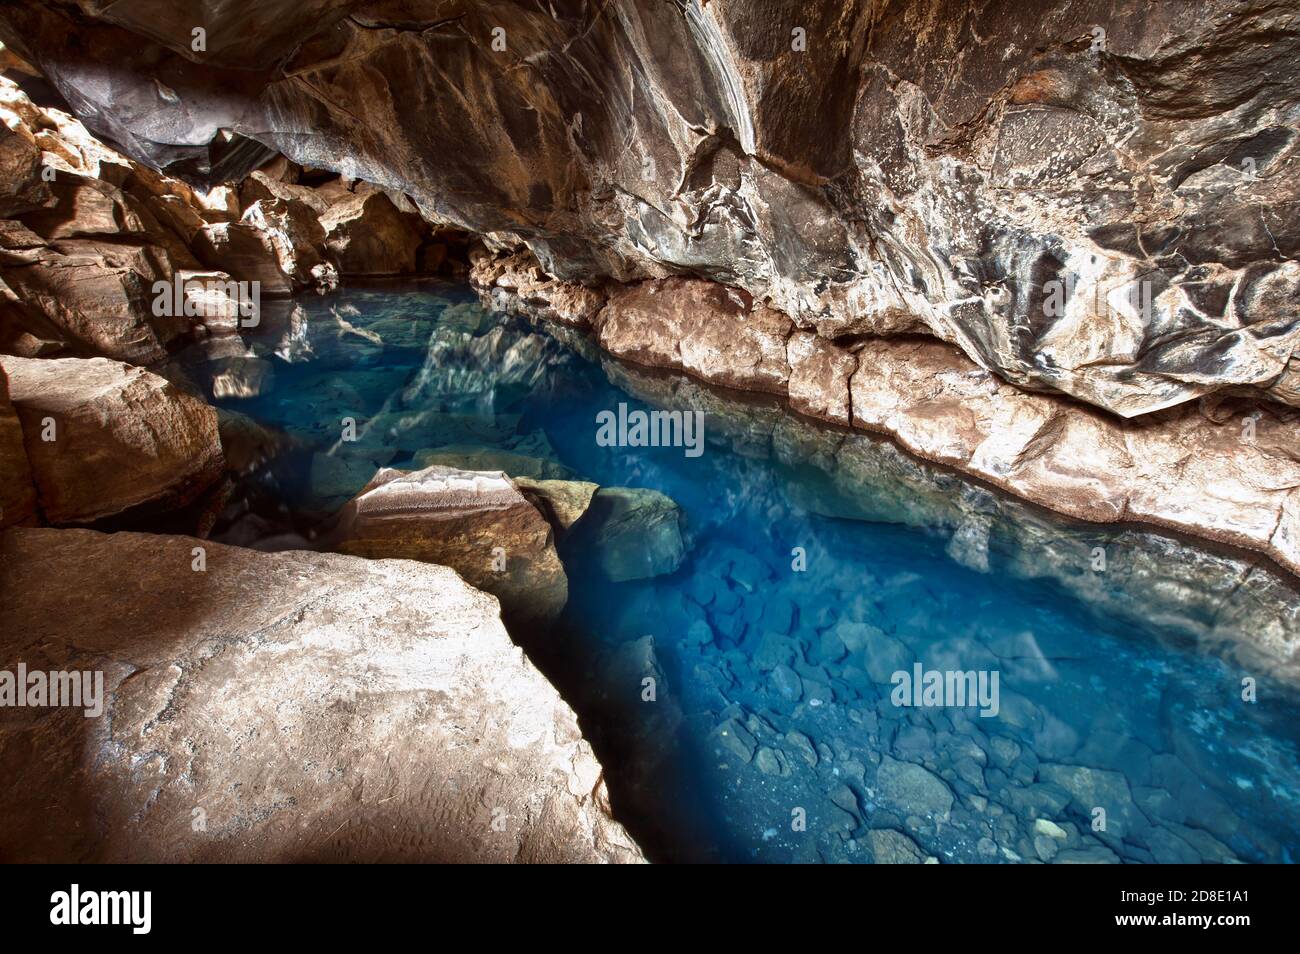 Grotte volcanique de Grjotagja avec une eau thermale incroyablement bleue et chaude près du lac Myvatn dans le nord-est de l'Islande Banque D'Images